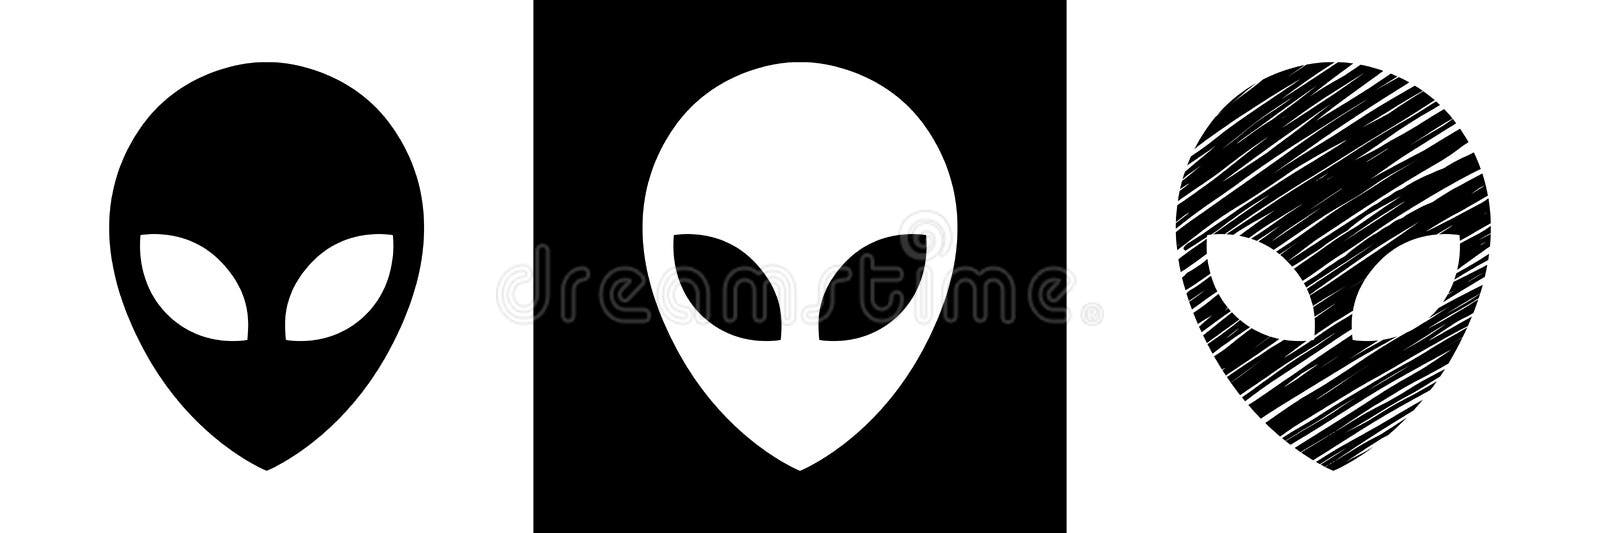 Personagem alienígena desenhos animados. Ilustração vetorial plana sobre  fundo azul . imagem vetorial de goodstocker.yandex.ru© 337897492